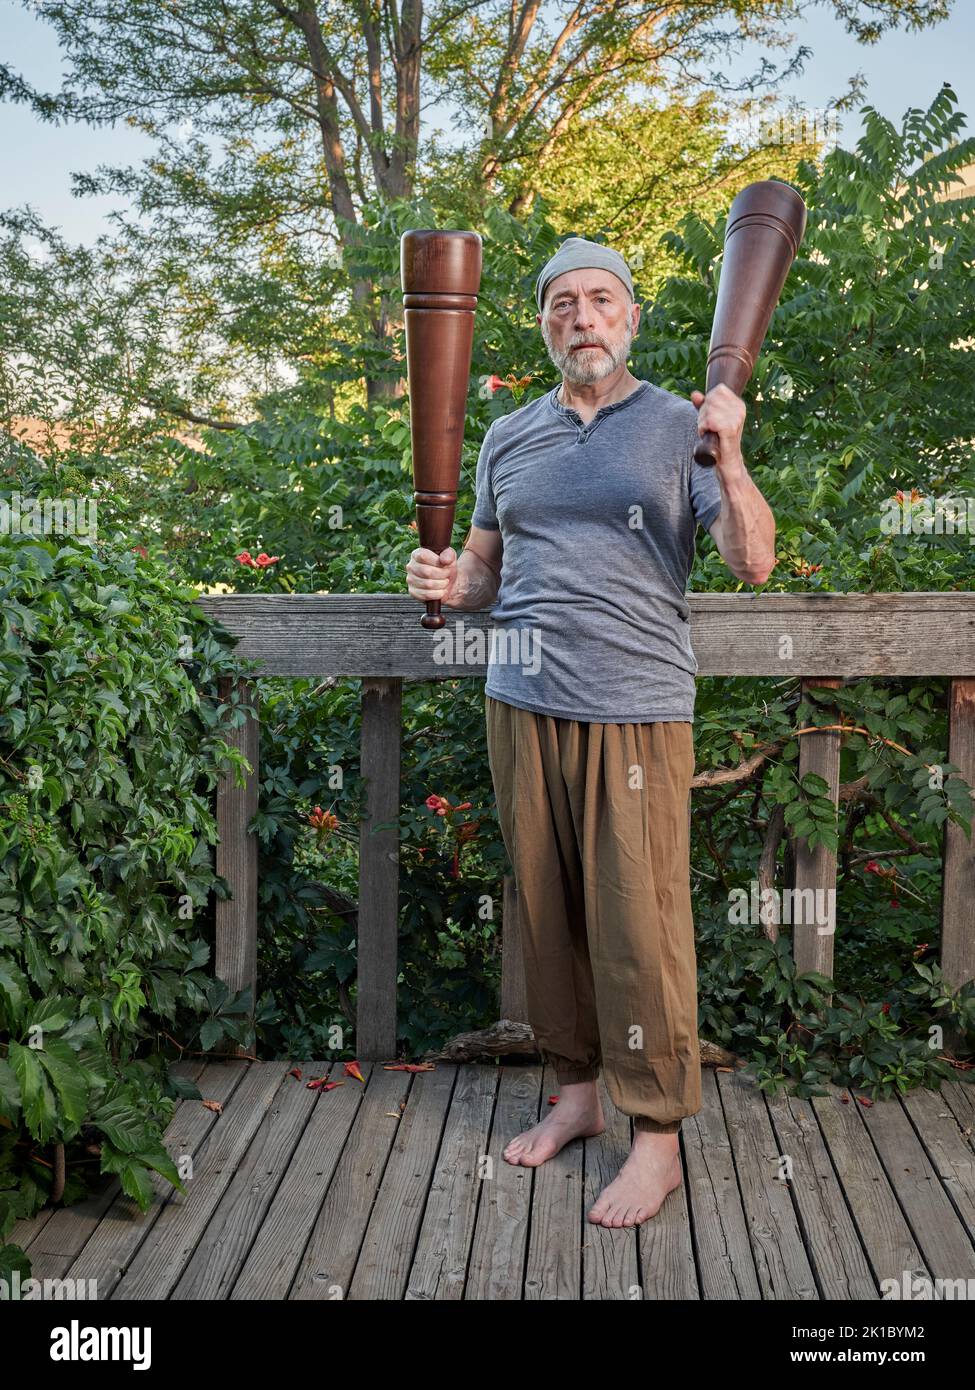 L'homme âgé (fin 60s) fait de l'exercice avec de lourds méels persans dans son patio d'arrière-cour, concept de forme physique fonctionnelle utilisant des outils traditionnels Banque D'Images